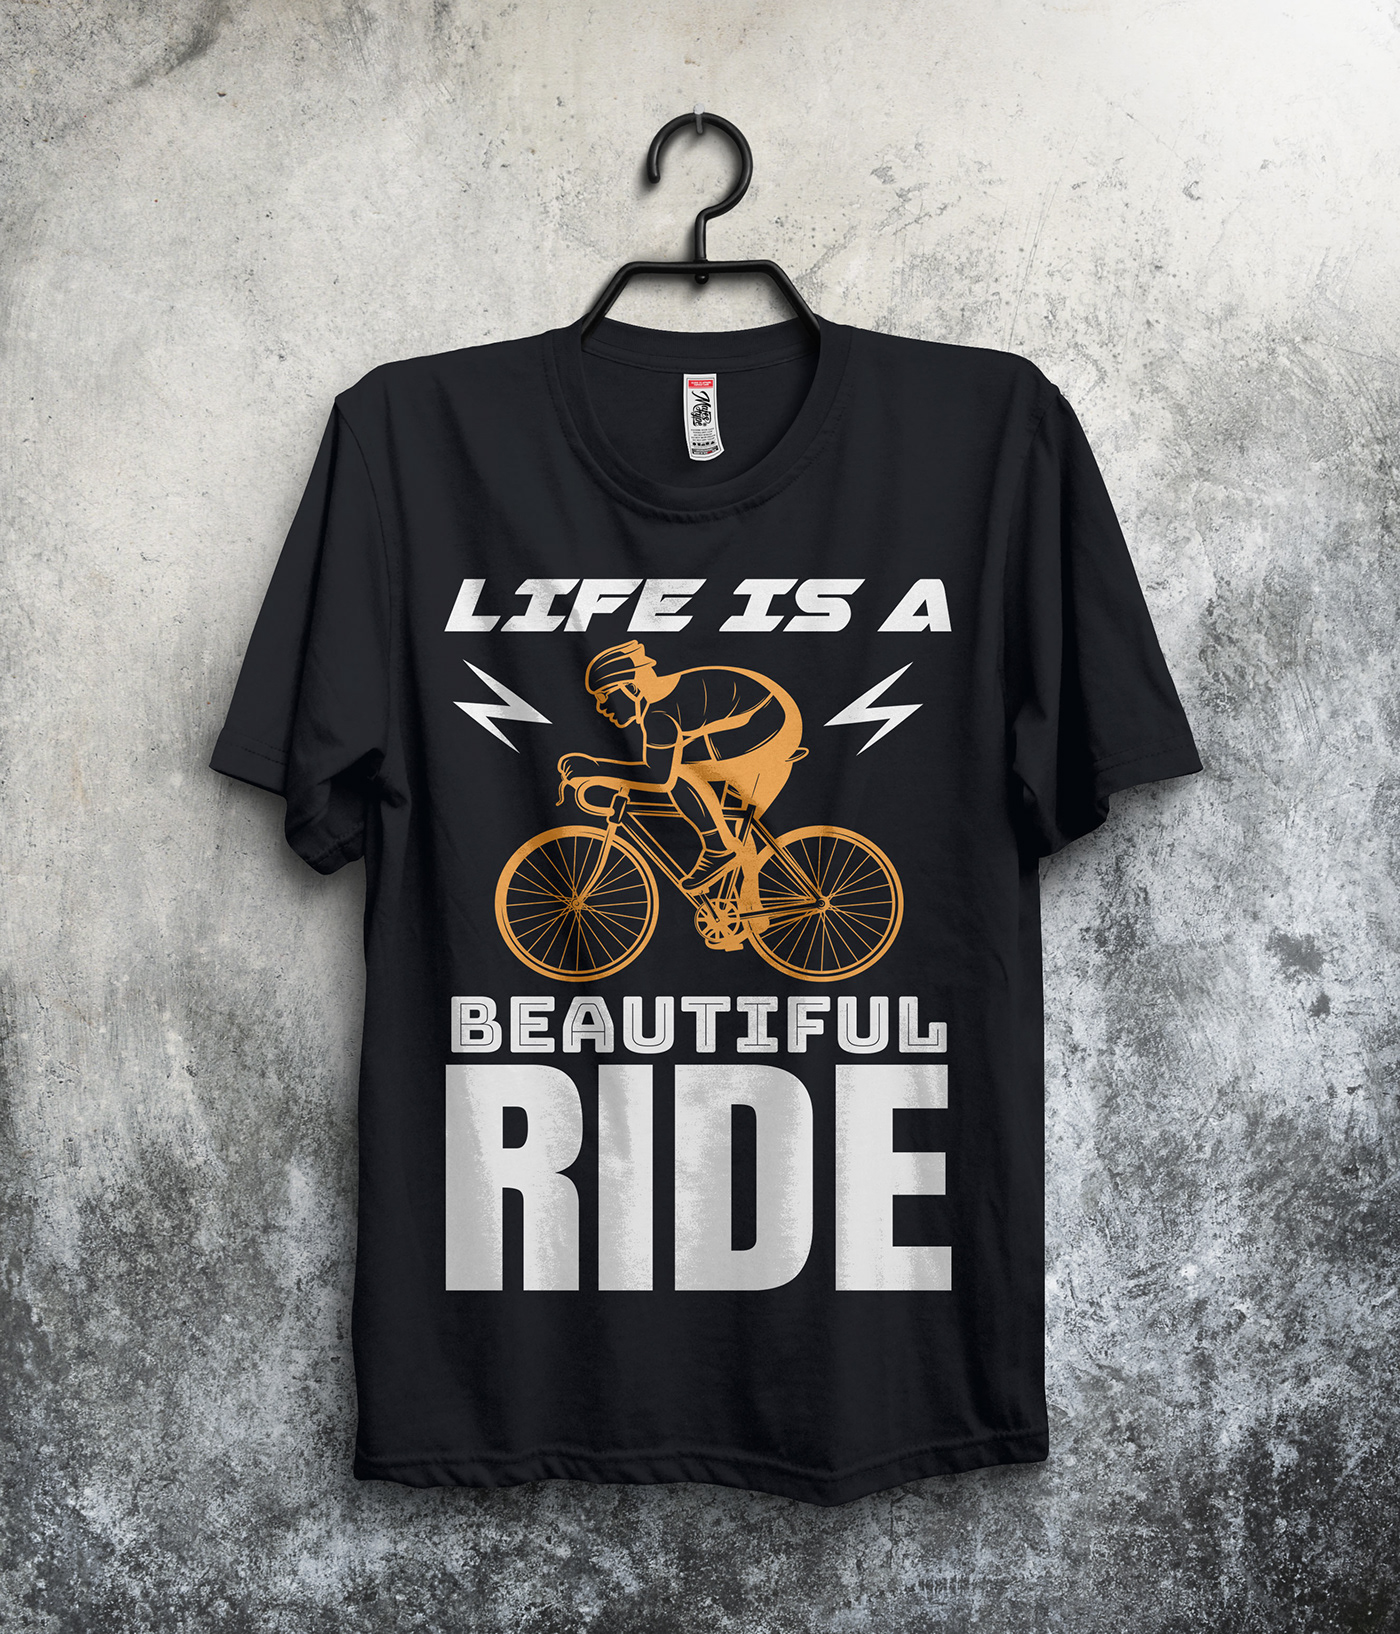 Bicycle typography   Tshirt Design tshirts tshirtdesign bicycle t-shirt Bicycle T-Shirt Design Bicycle T-shirt Designs Bicycle T-Shirt Tee bicycle t-shirts